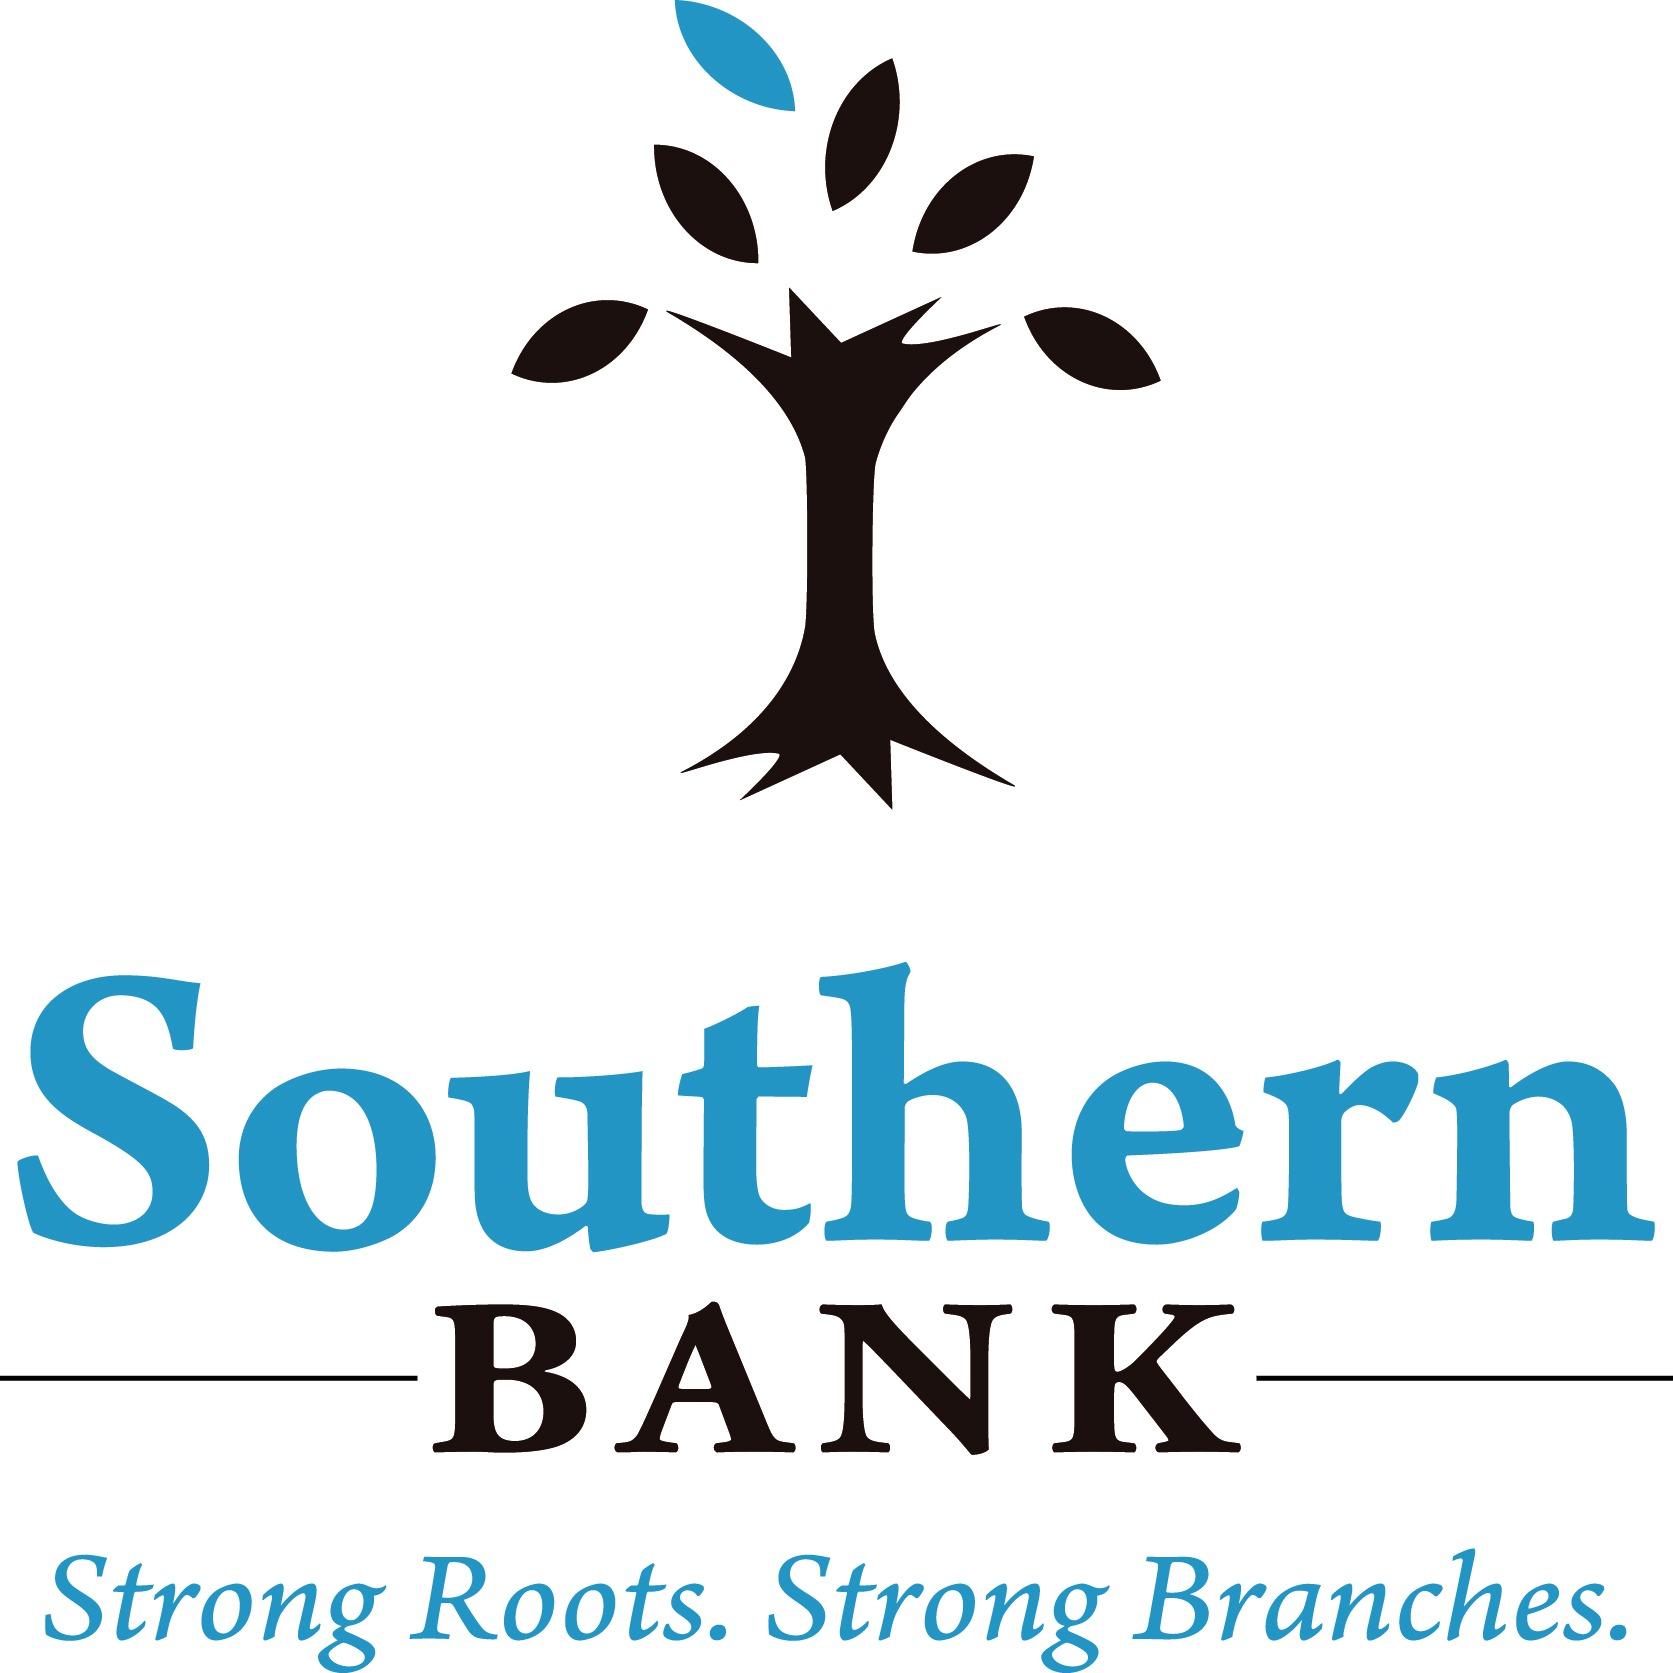 Southern Bank Photo